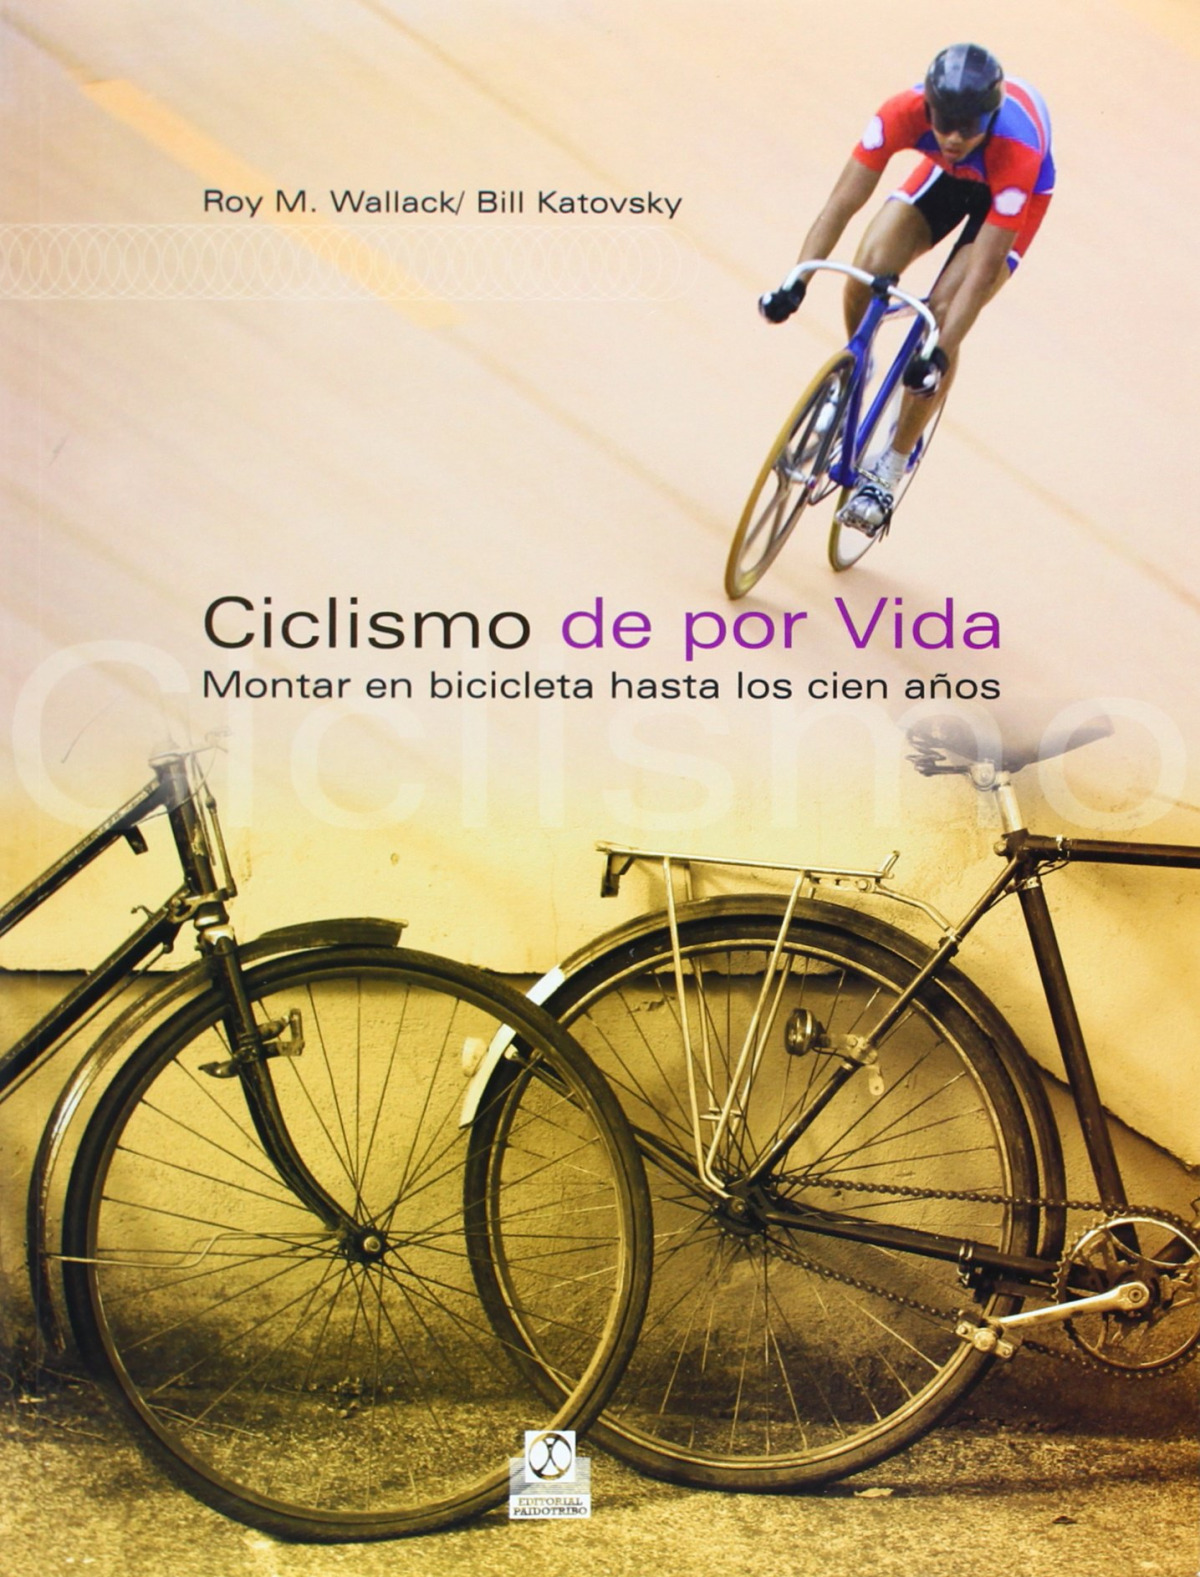 Ciclismo de por vida montar en bicicleta hasta los cien aÑos - Wallack, Roy M./Katovsky, Bill